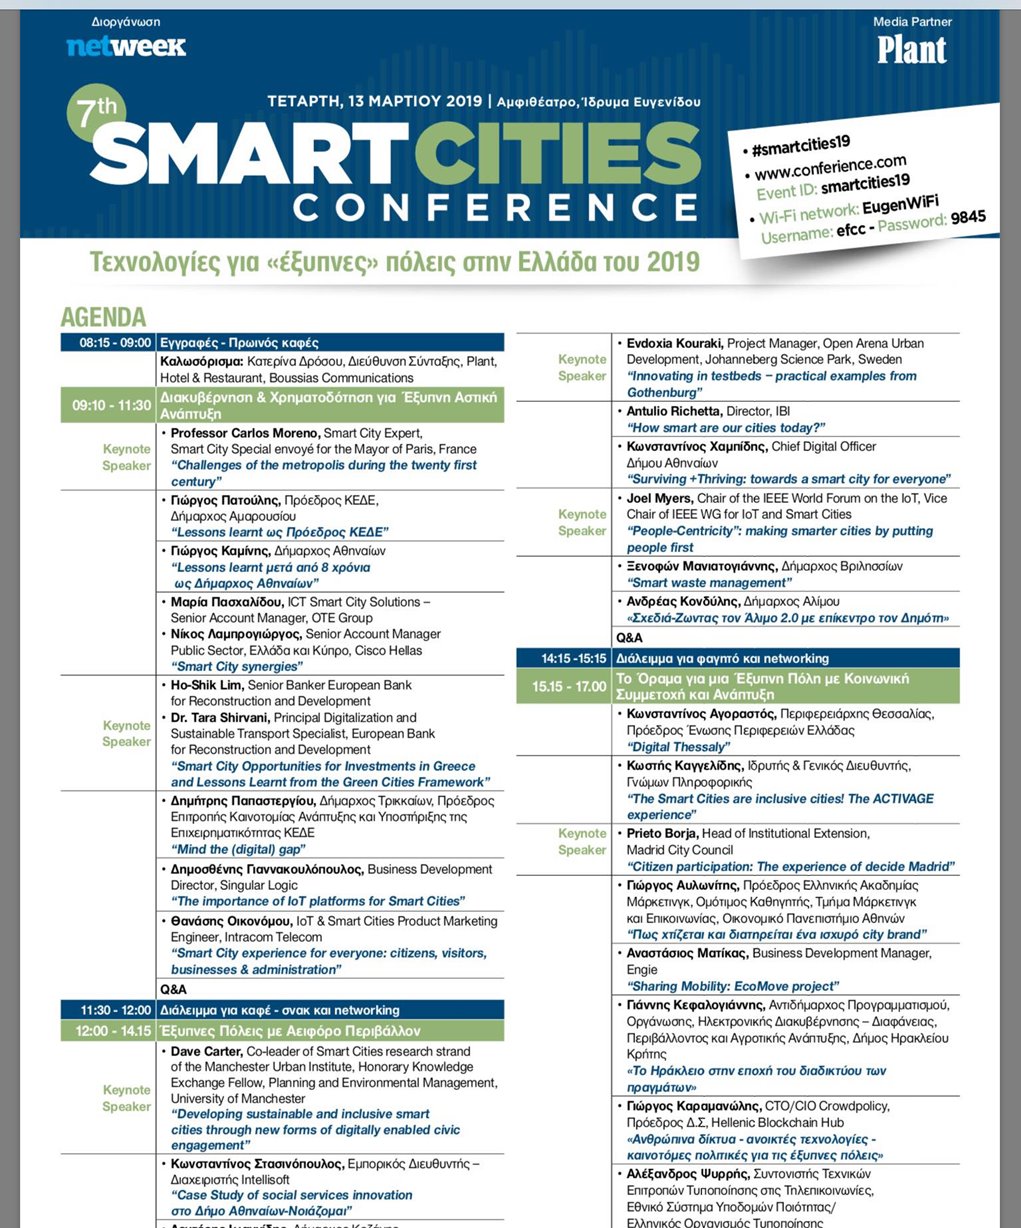 Κέρκυρα: Ο σύλλογος μονίμων κατοίκων στο συνέδριο smart cities